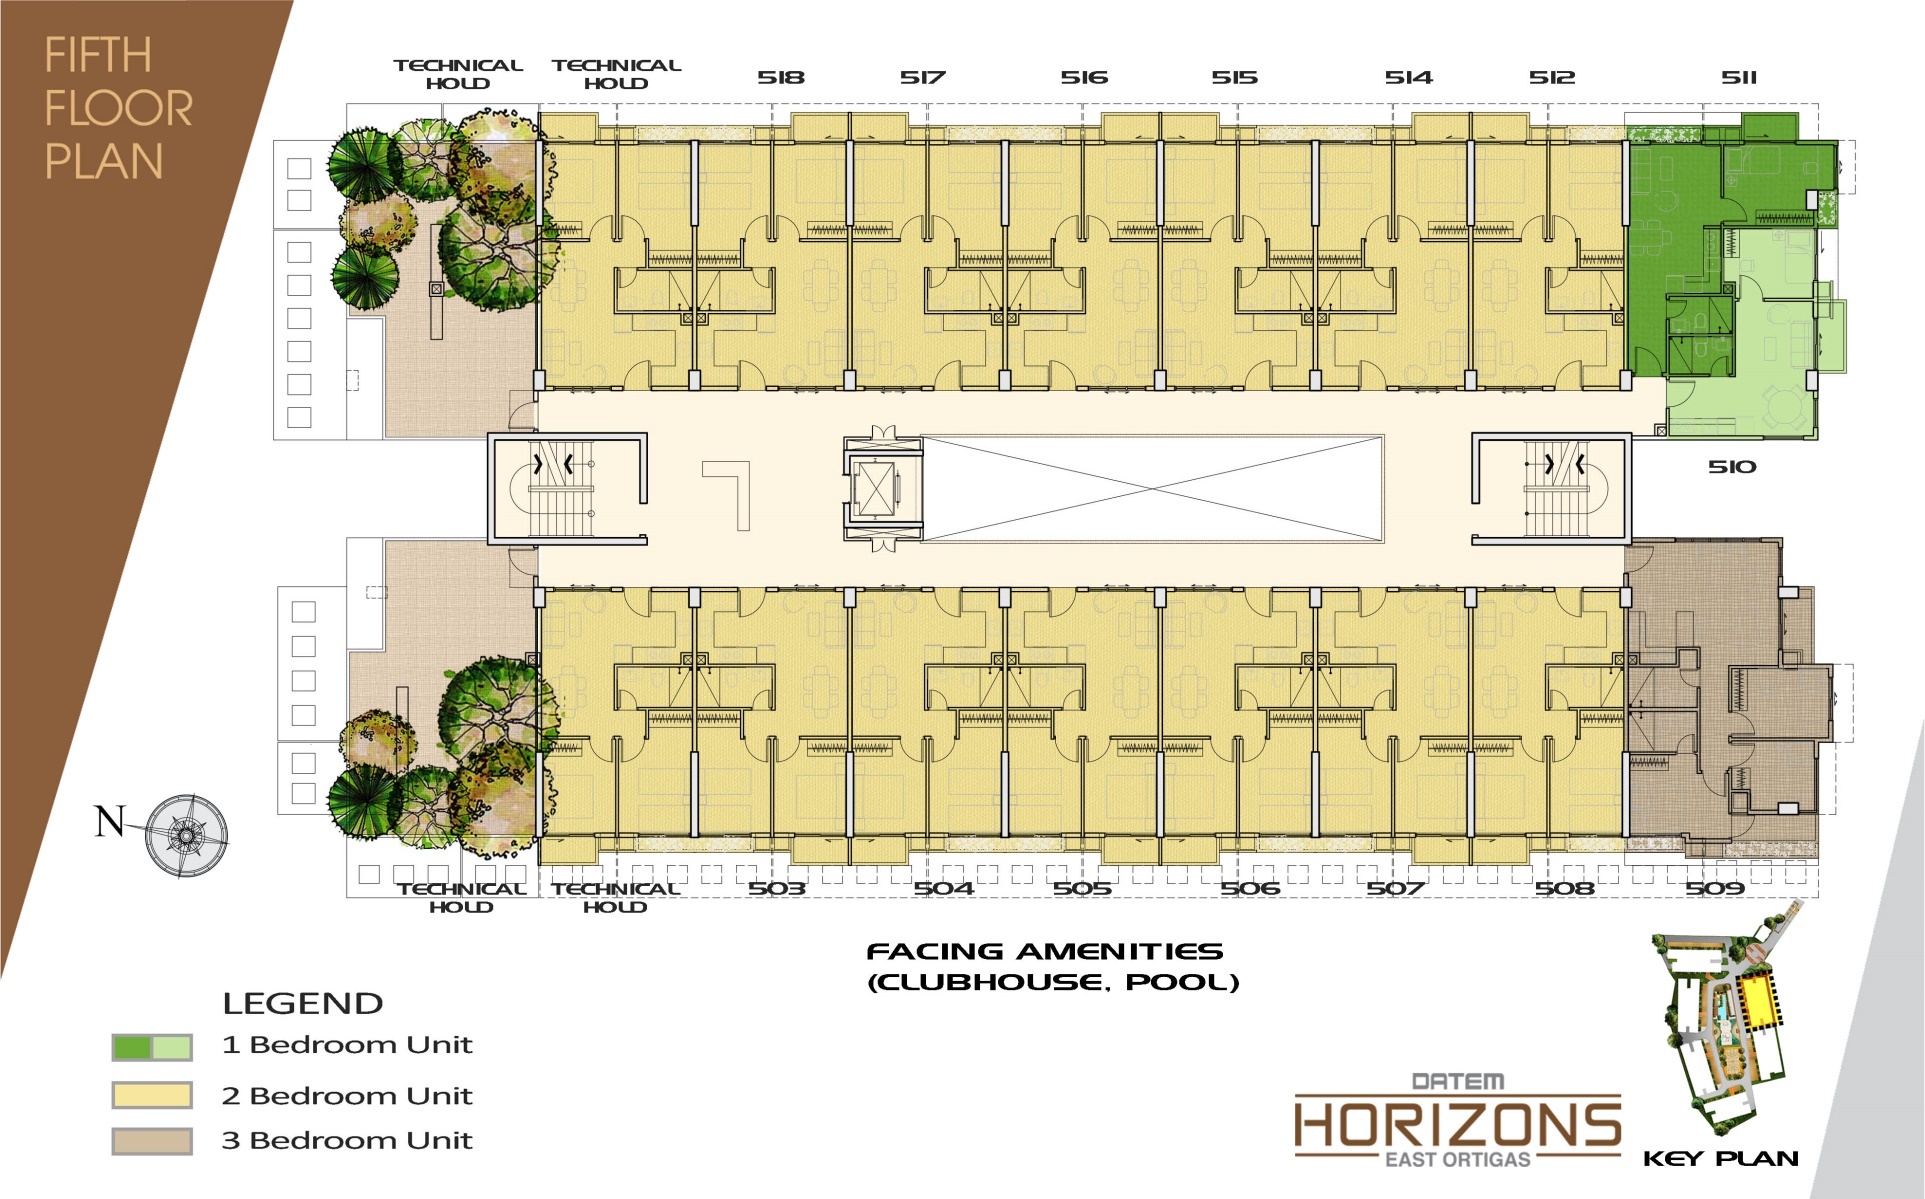 Datem Horizons East Ortigas - Floor Plan 5